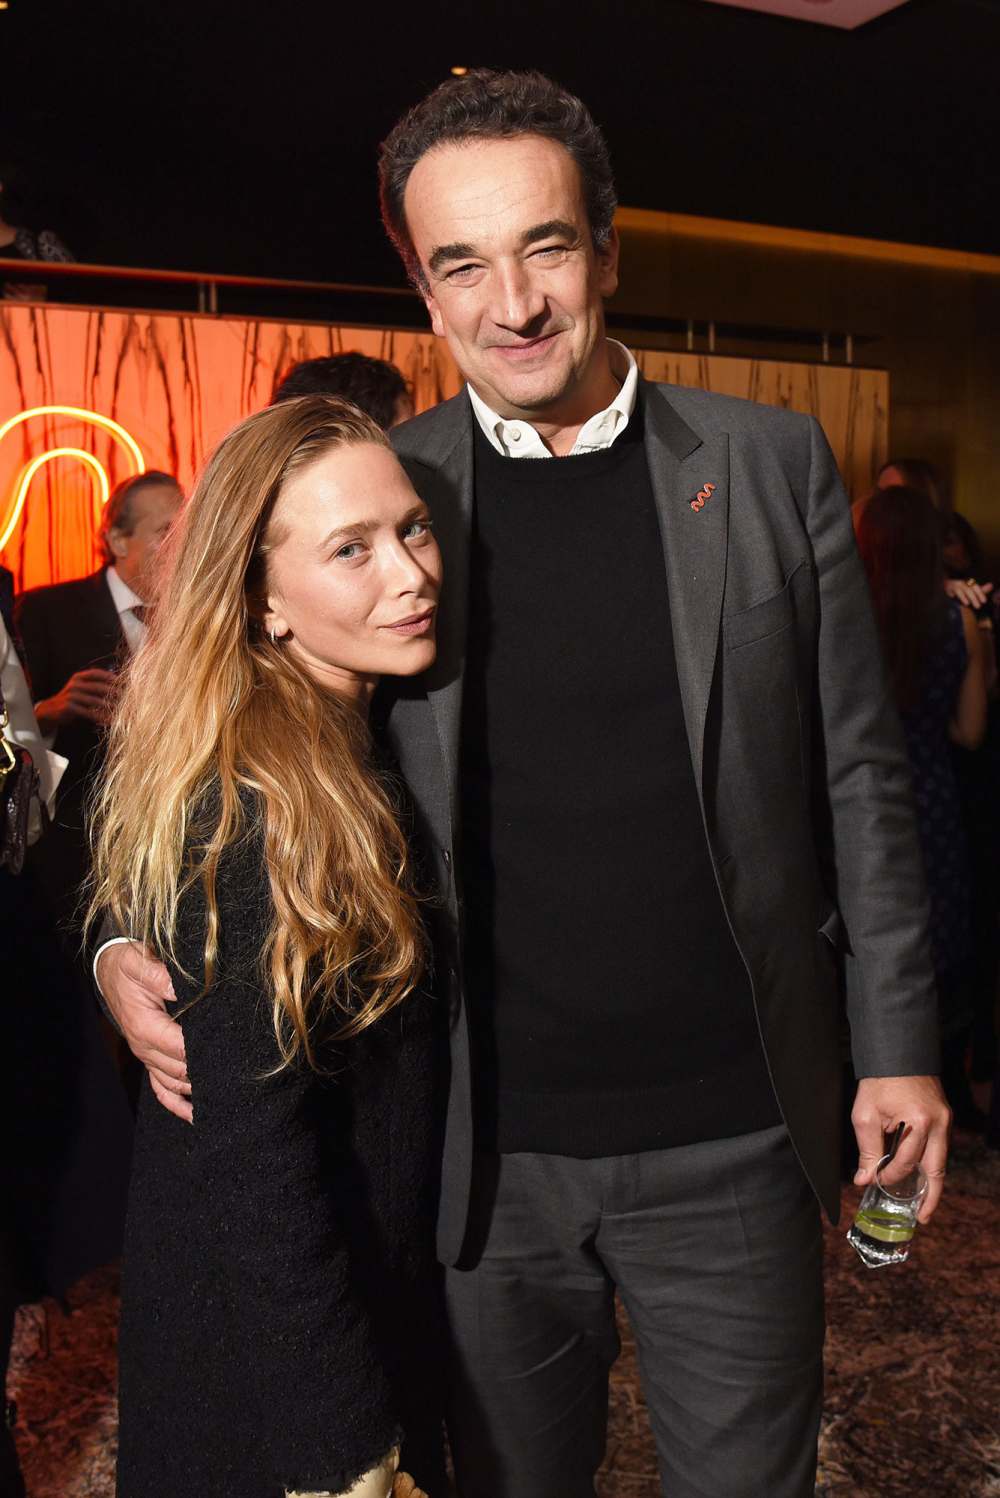 Mary-Kate Olsen Emergency Divorce Filing From Estranged Husband Olivier Sarkozy Was Rejected